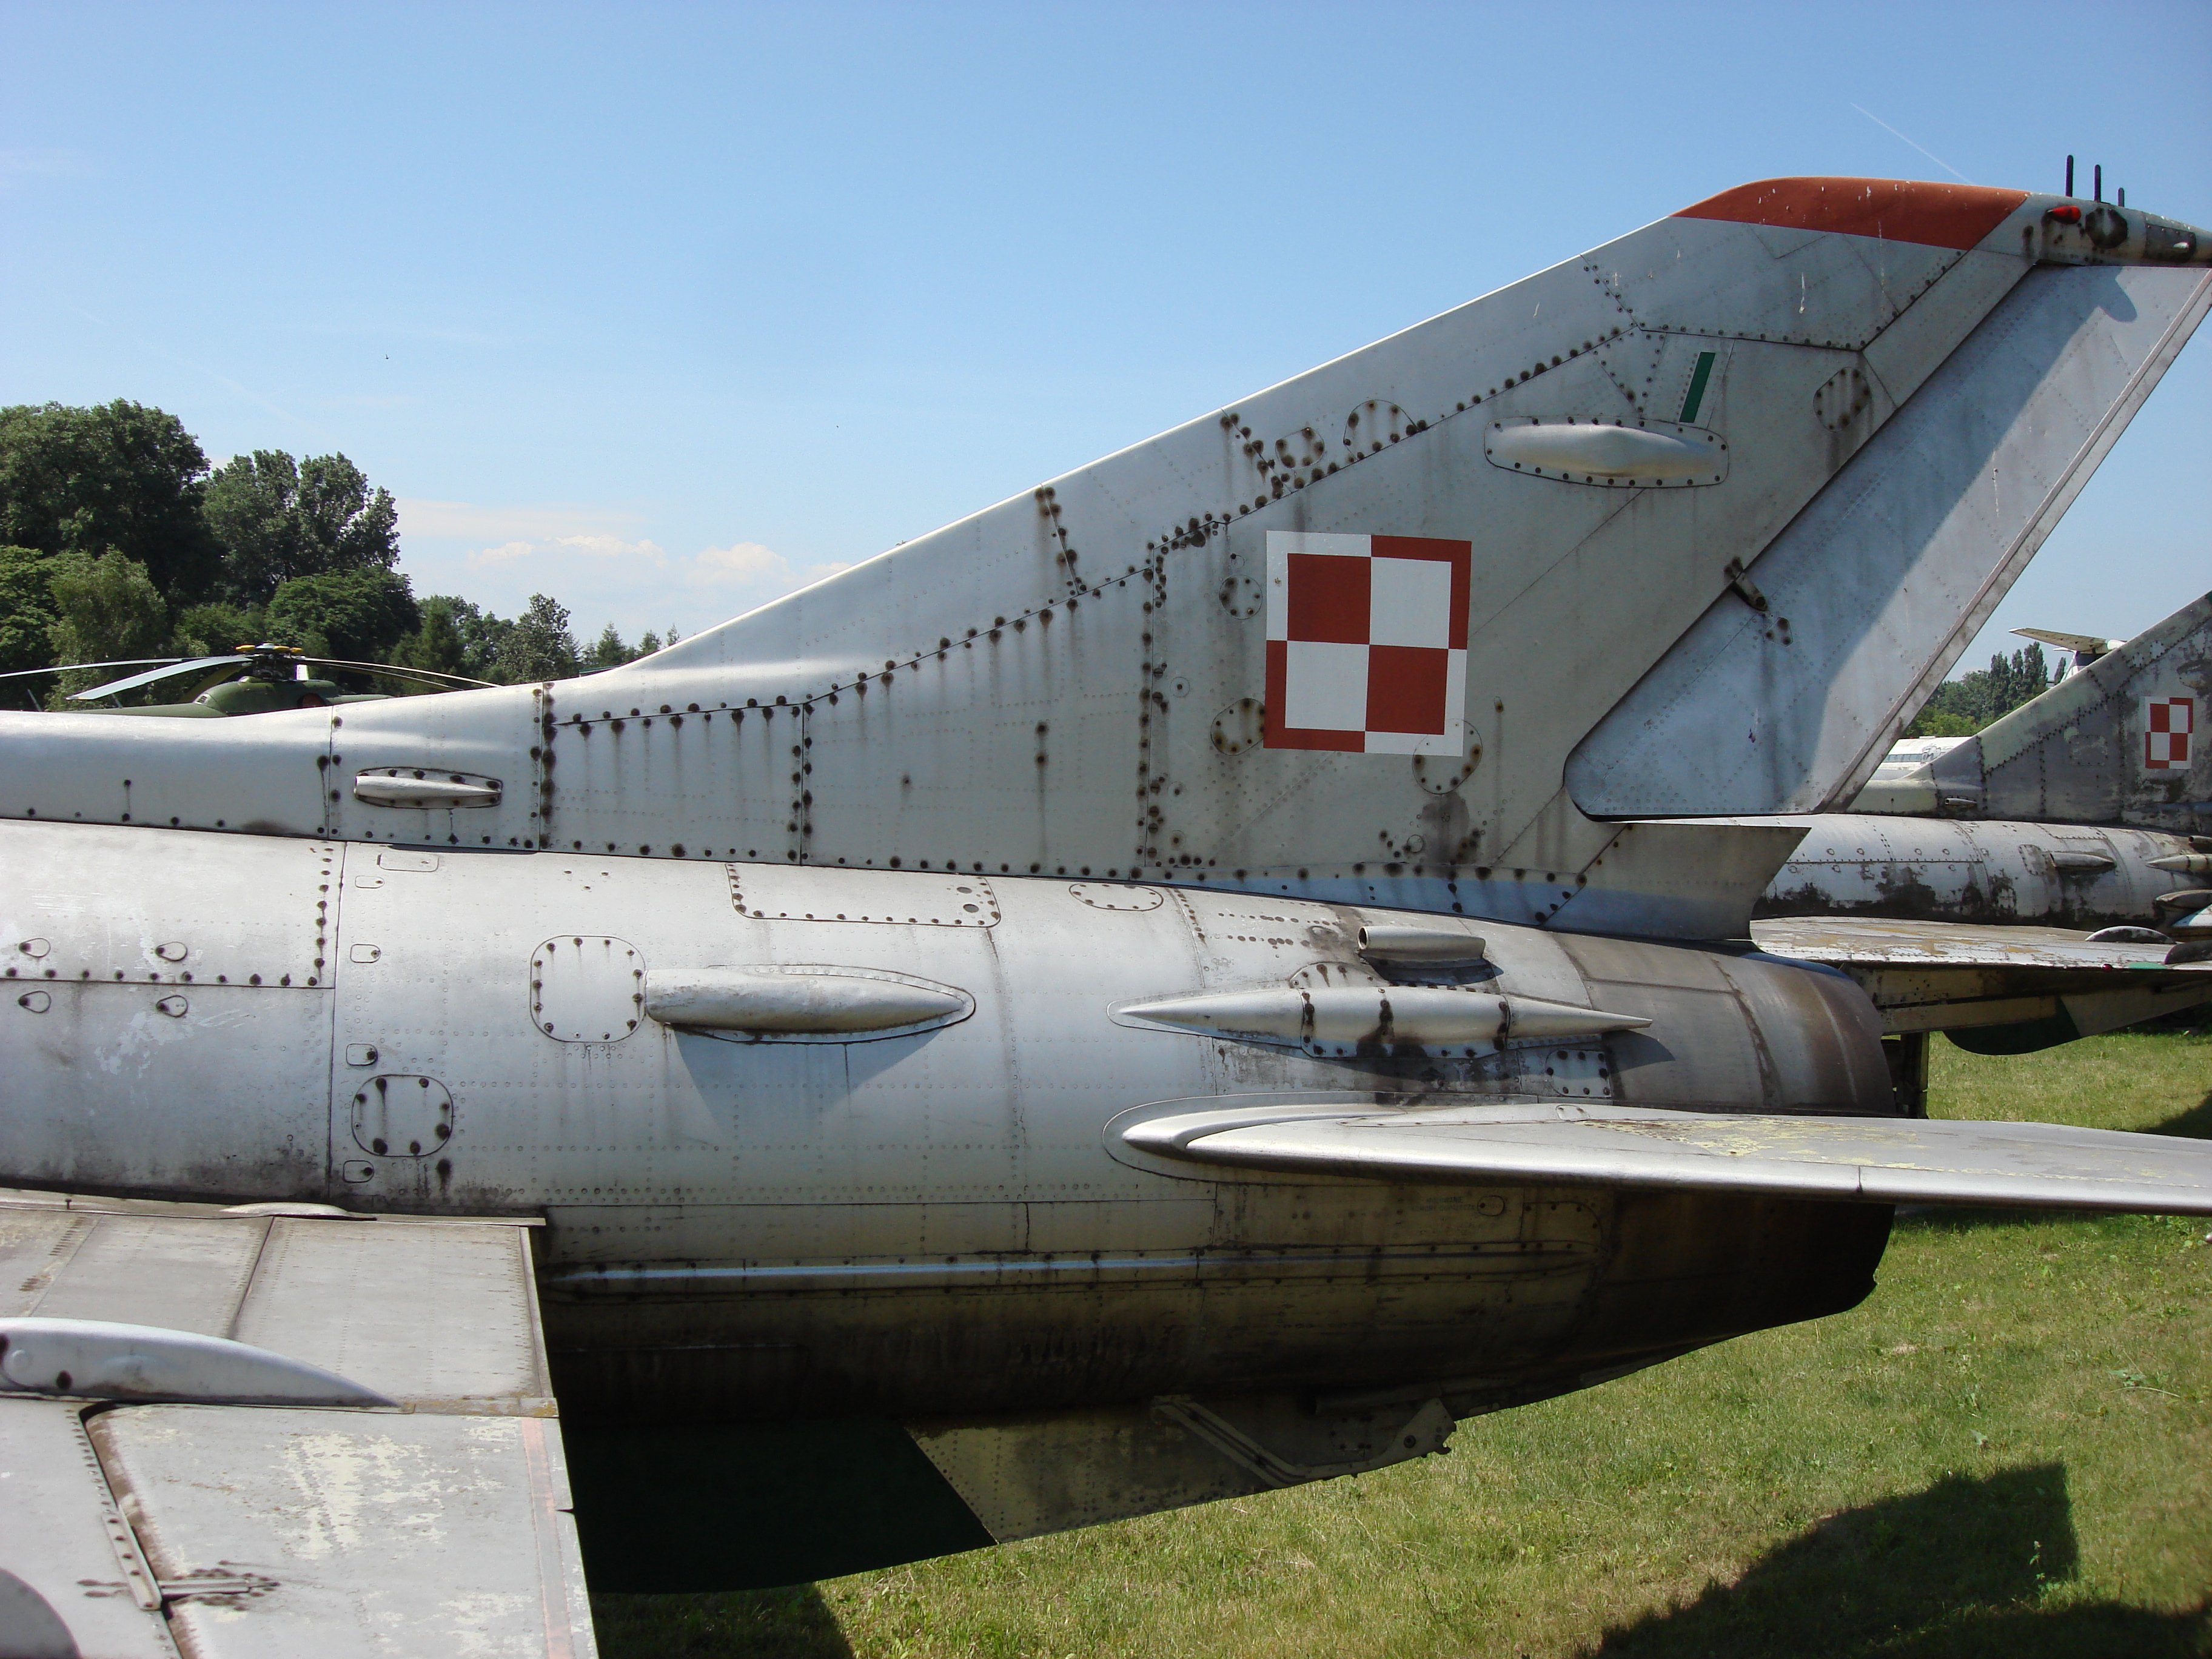 Tylna część kadłuba z usterzeniem MiG-21 PF nb 1901 Czyżyny 2006 rok. Zdjęcie Karol Placha Hetman